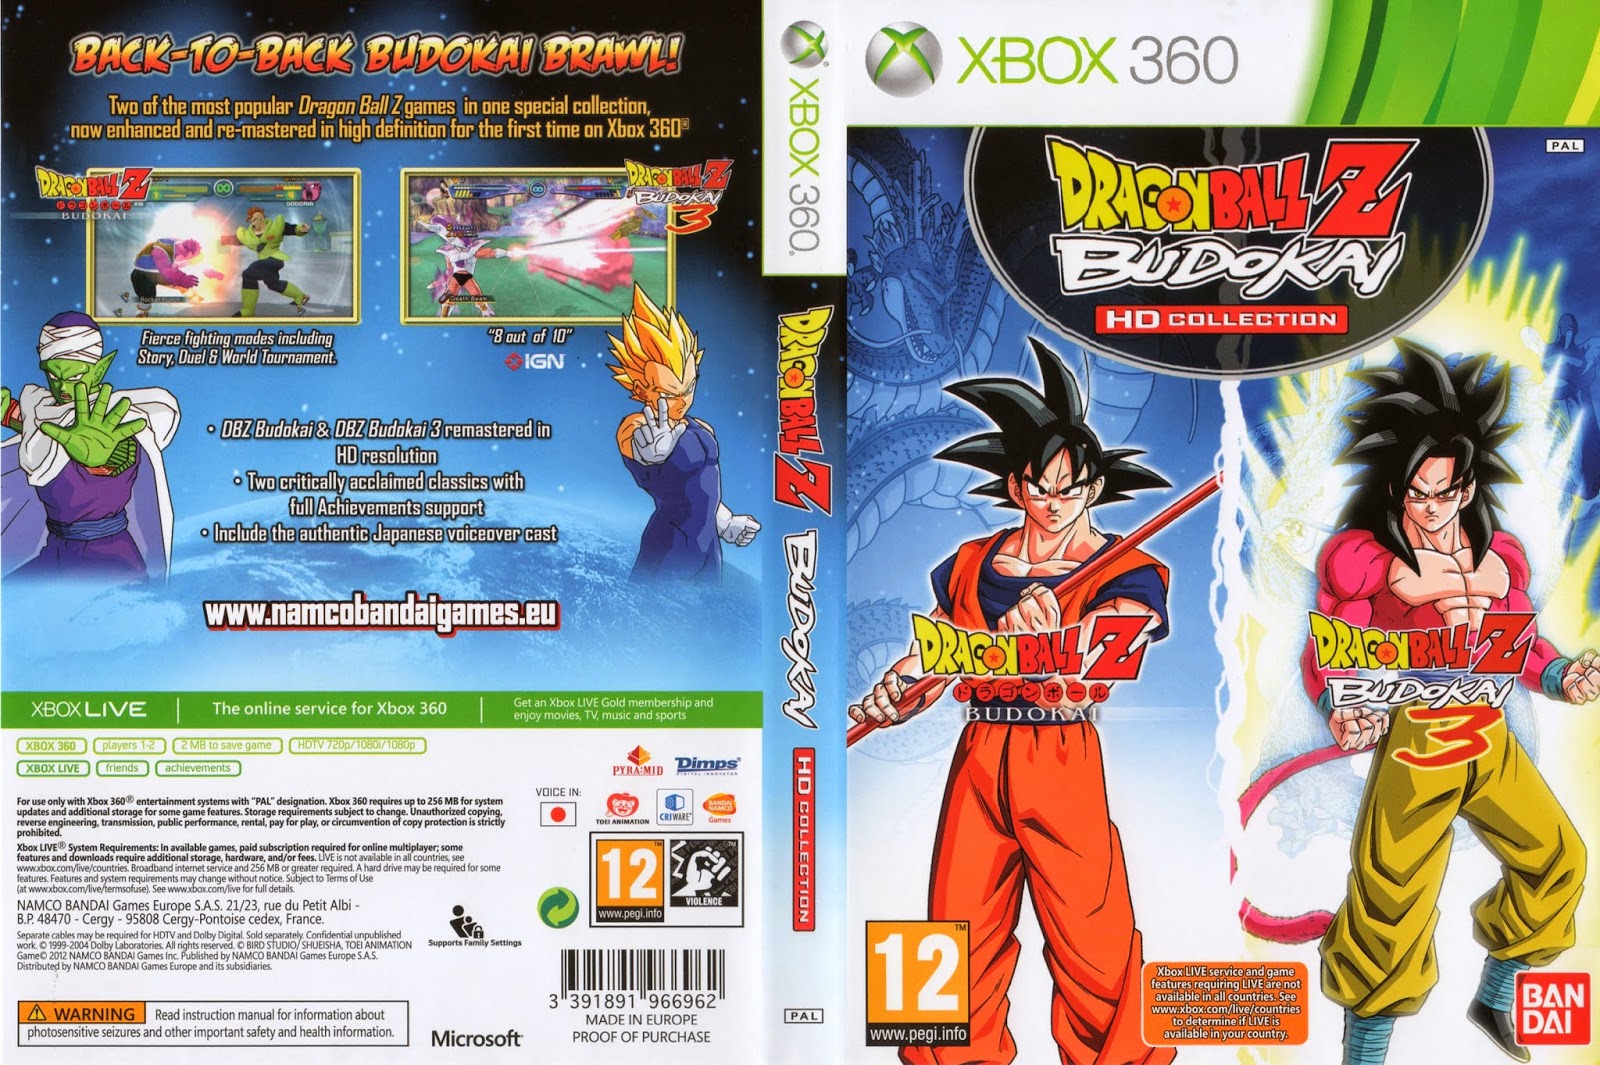 Caratulas Dragon Ball Dragon Ball Z Budokai Hd Collection Xbox 360